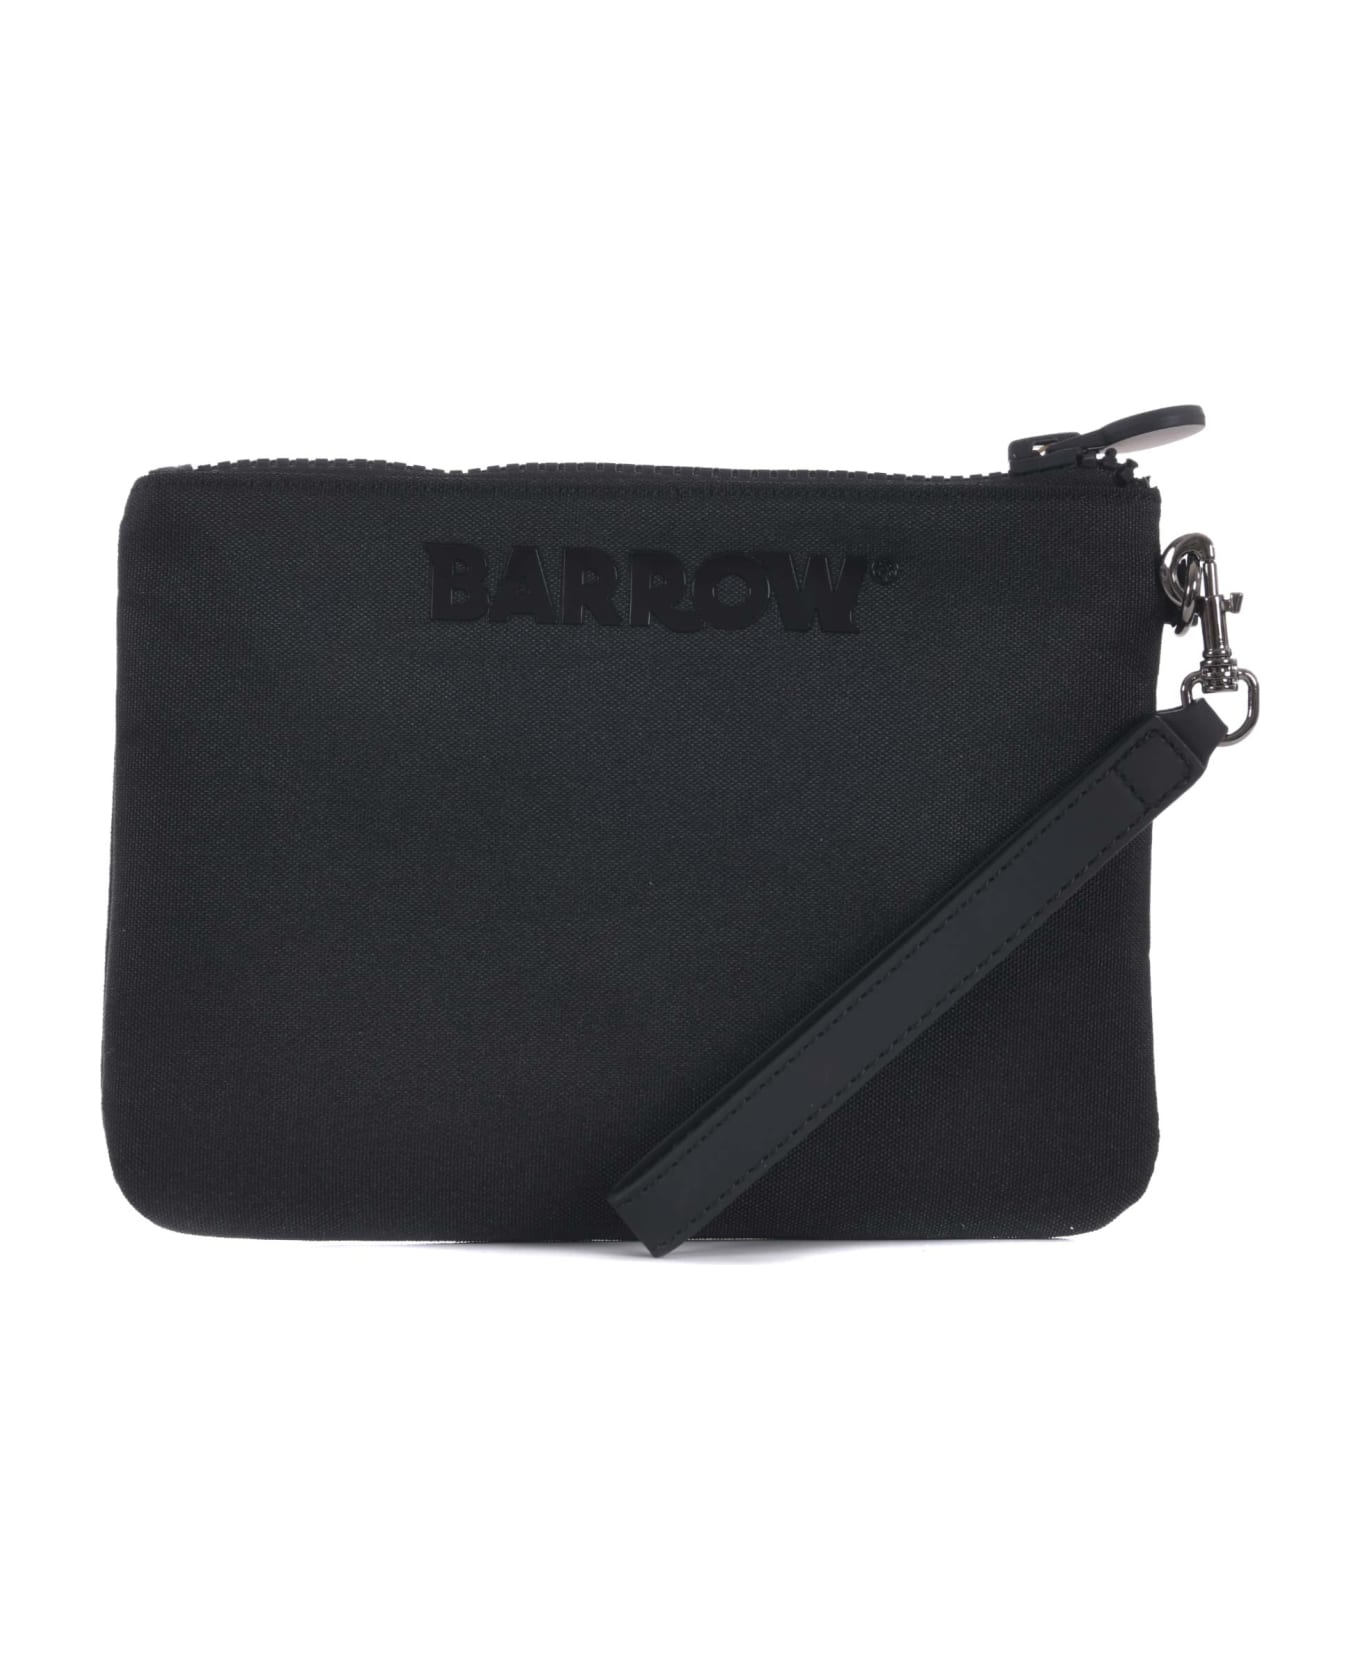 Barrow Clutch Bag - Nero/giallo fluo